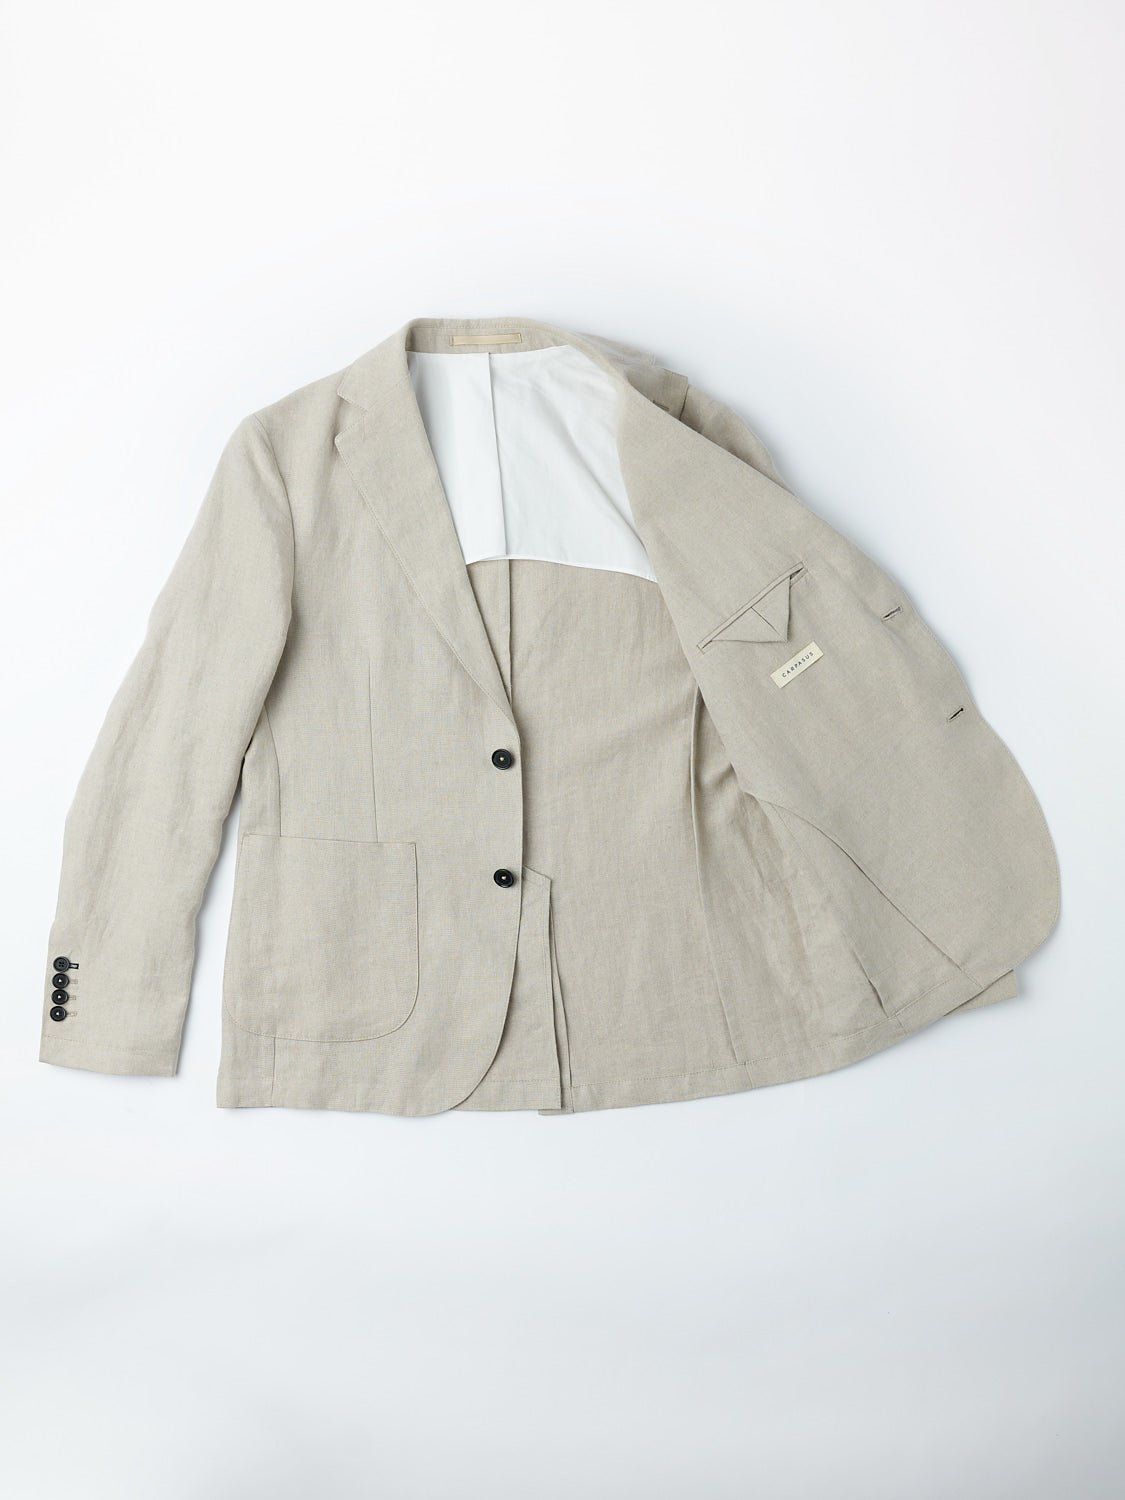 Suit Casca Jacket Linen Beige